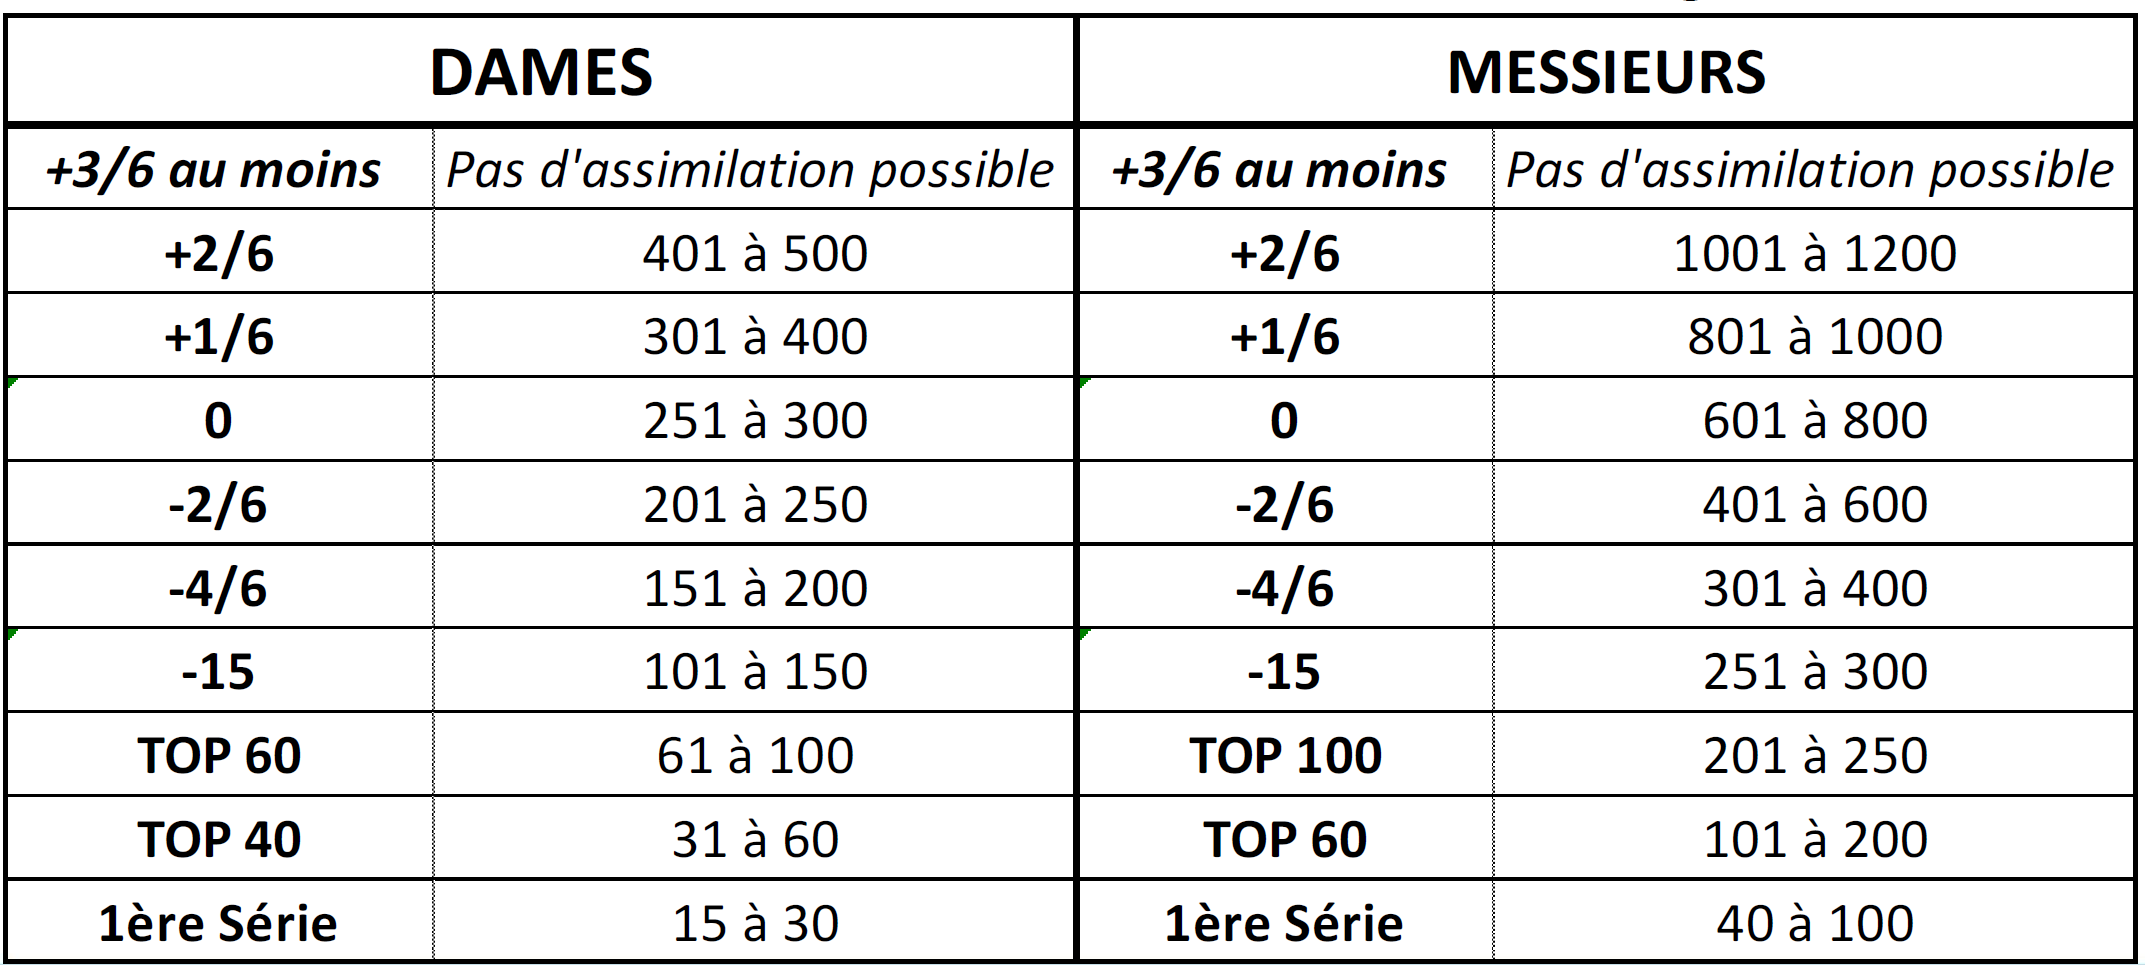 フランスのトップ 40 または 30 位の選手を直接同化させることはできますか?